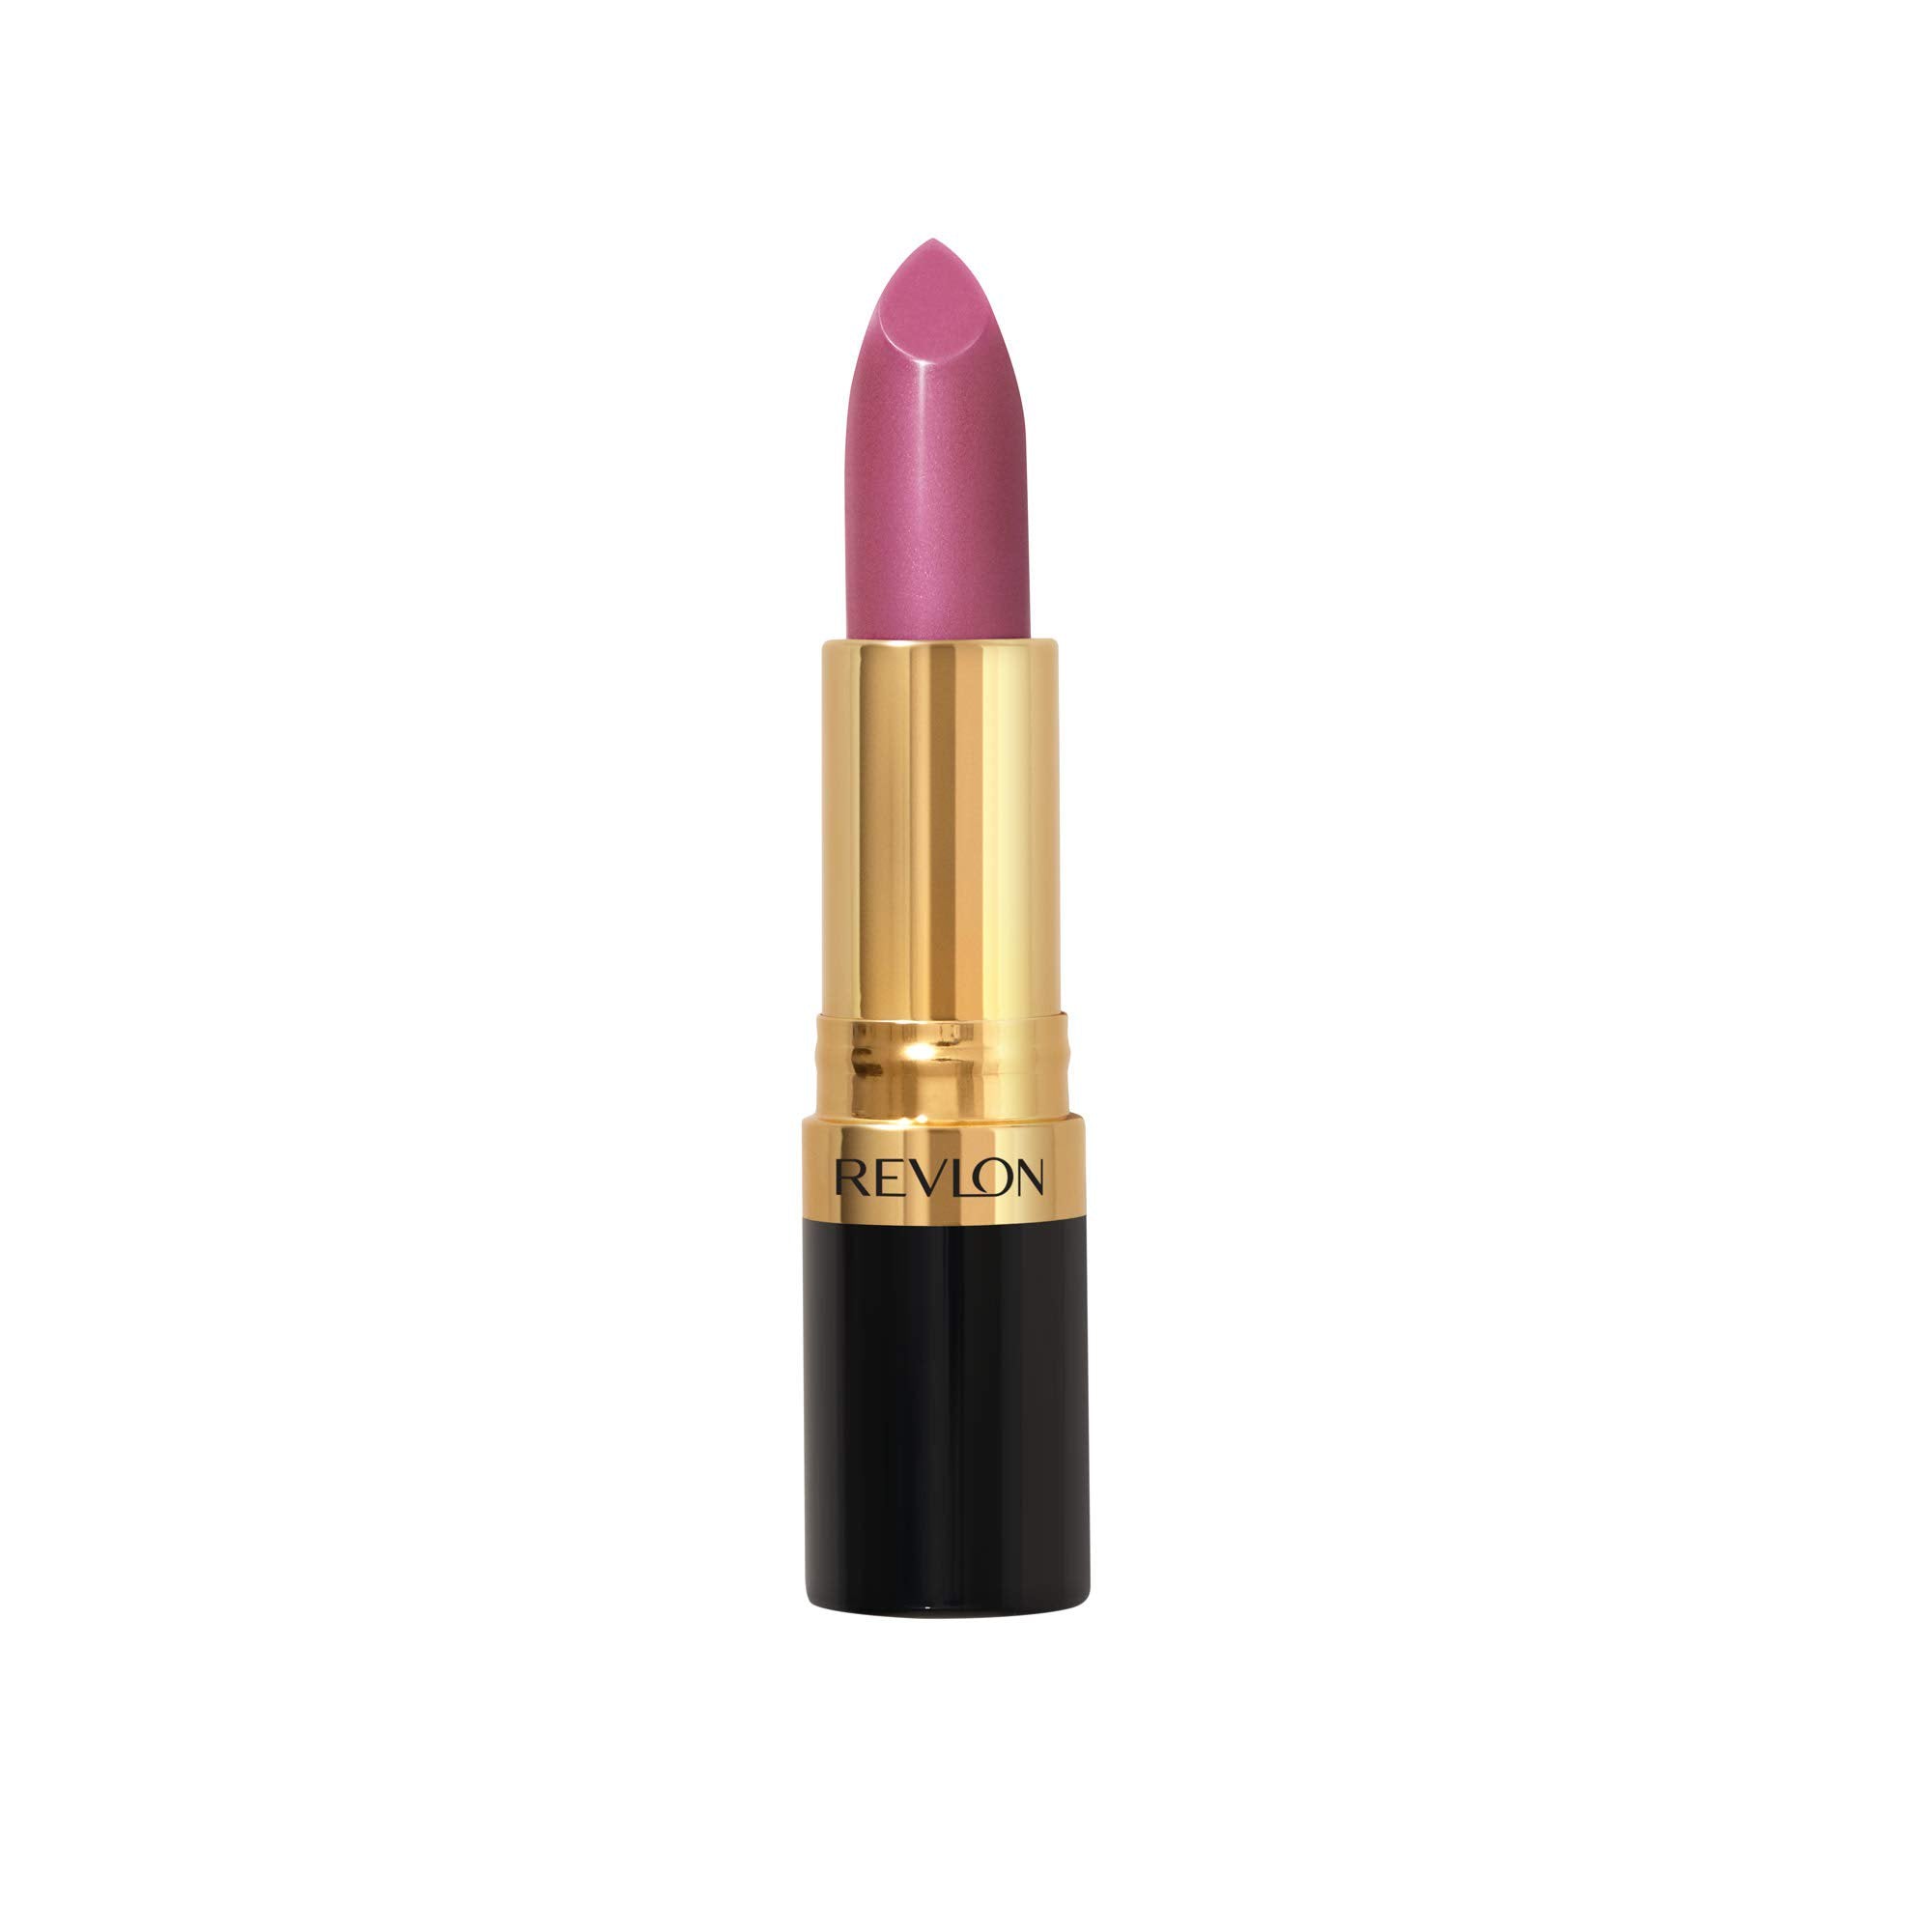  Lipstick - ADDROS.COM  